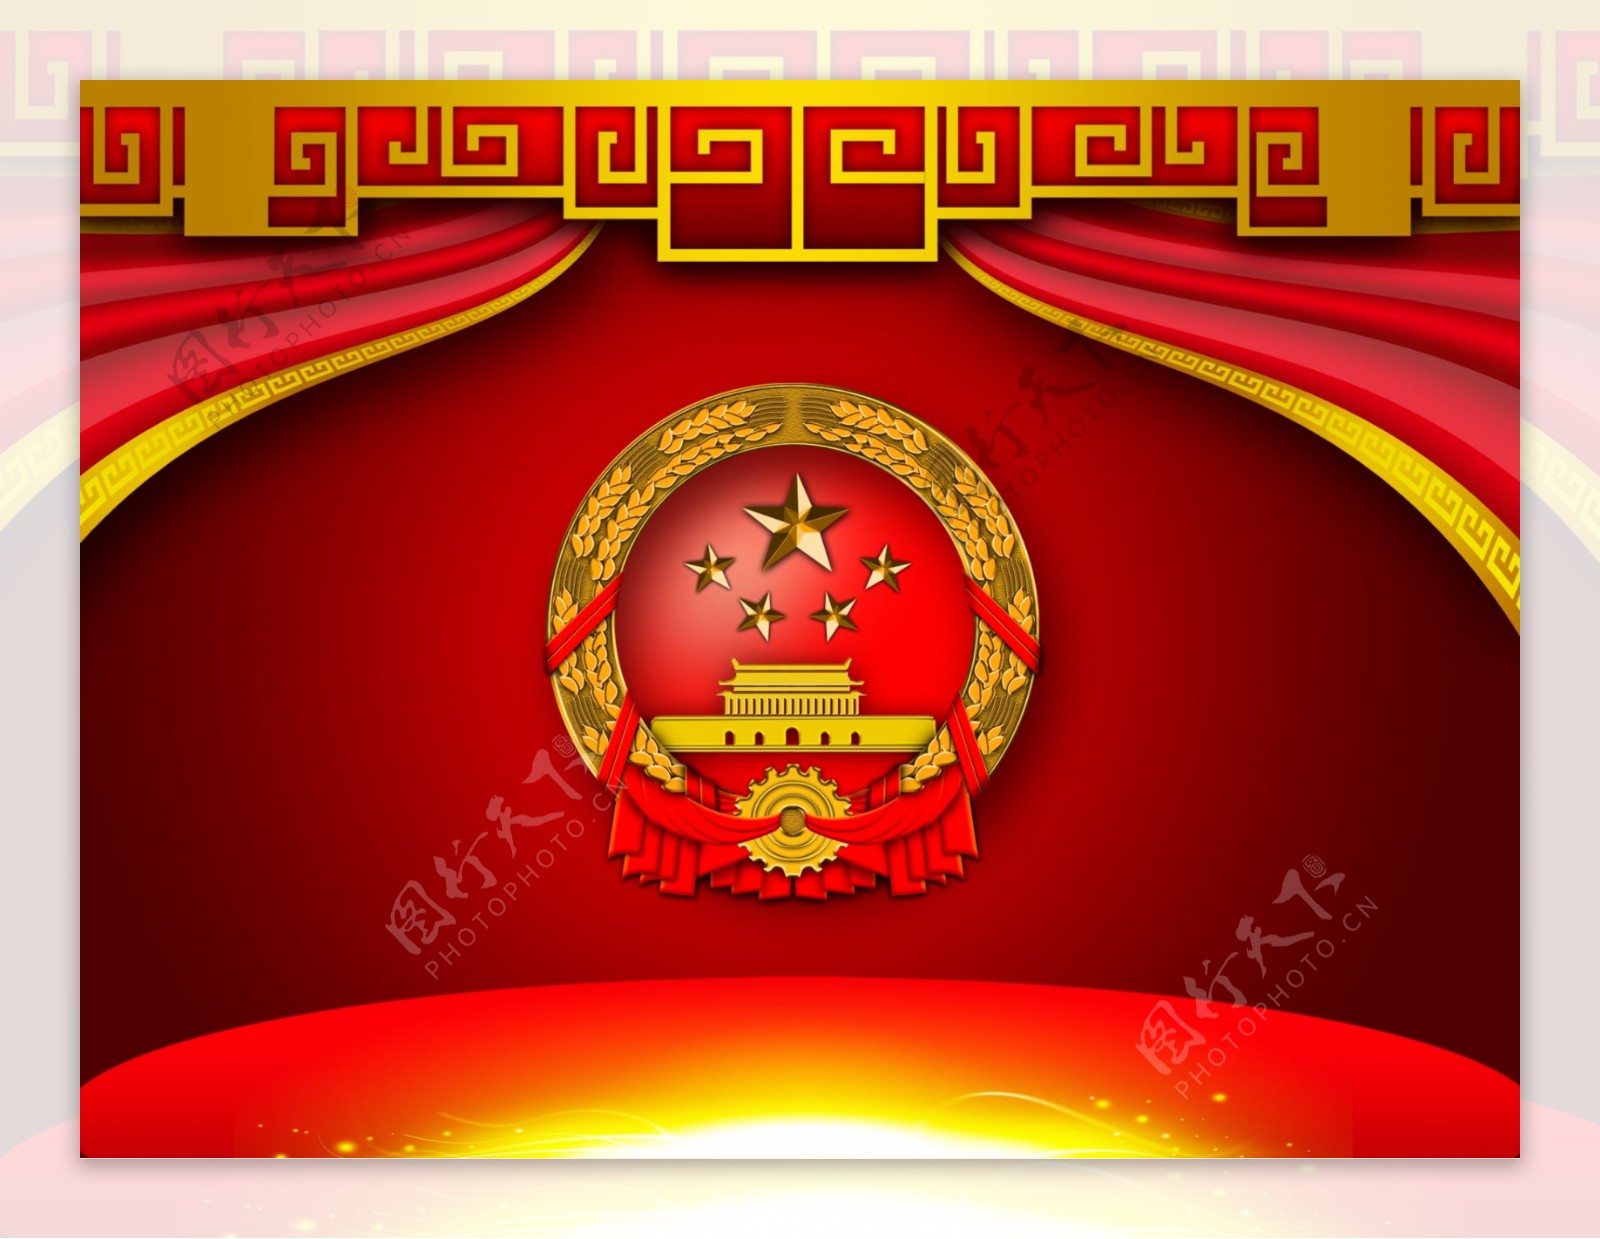 中国国徽壁纸-图库-五毛网